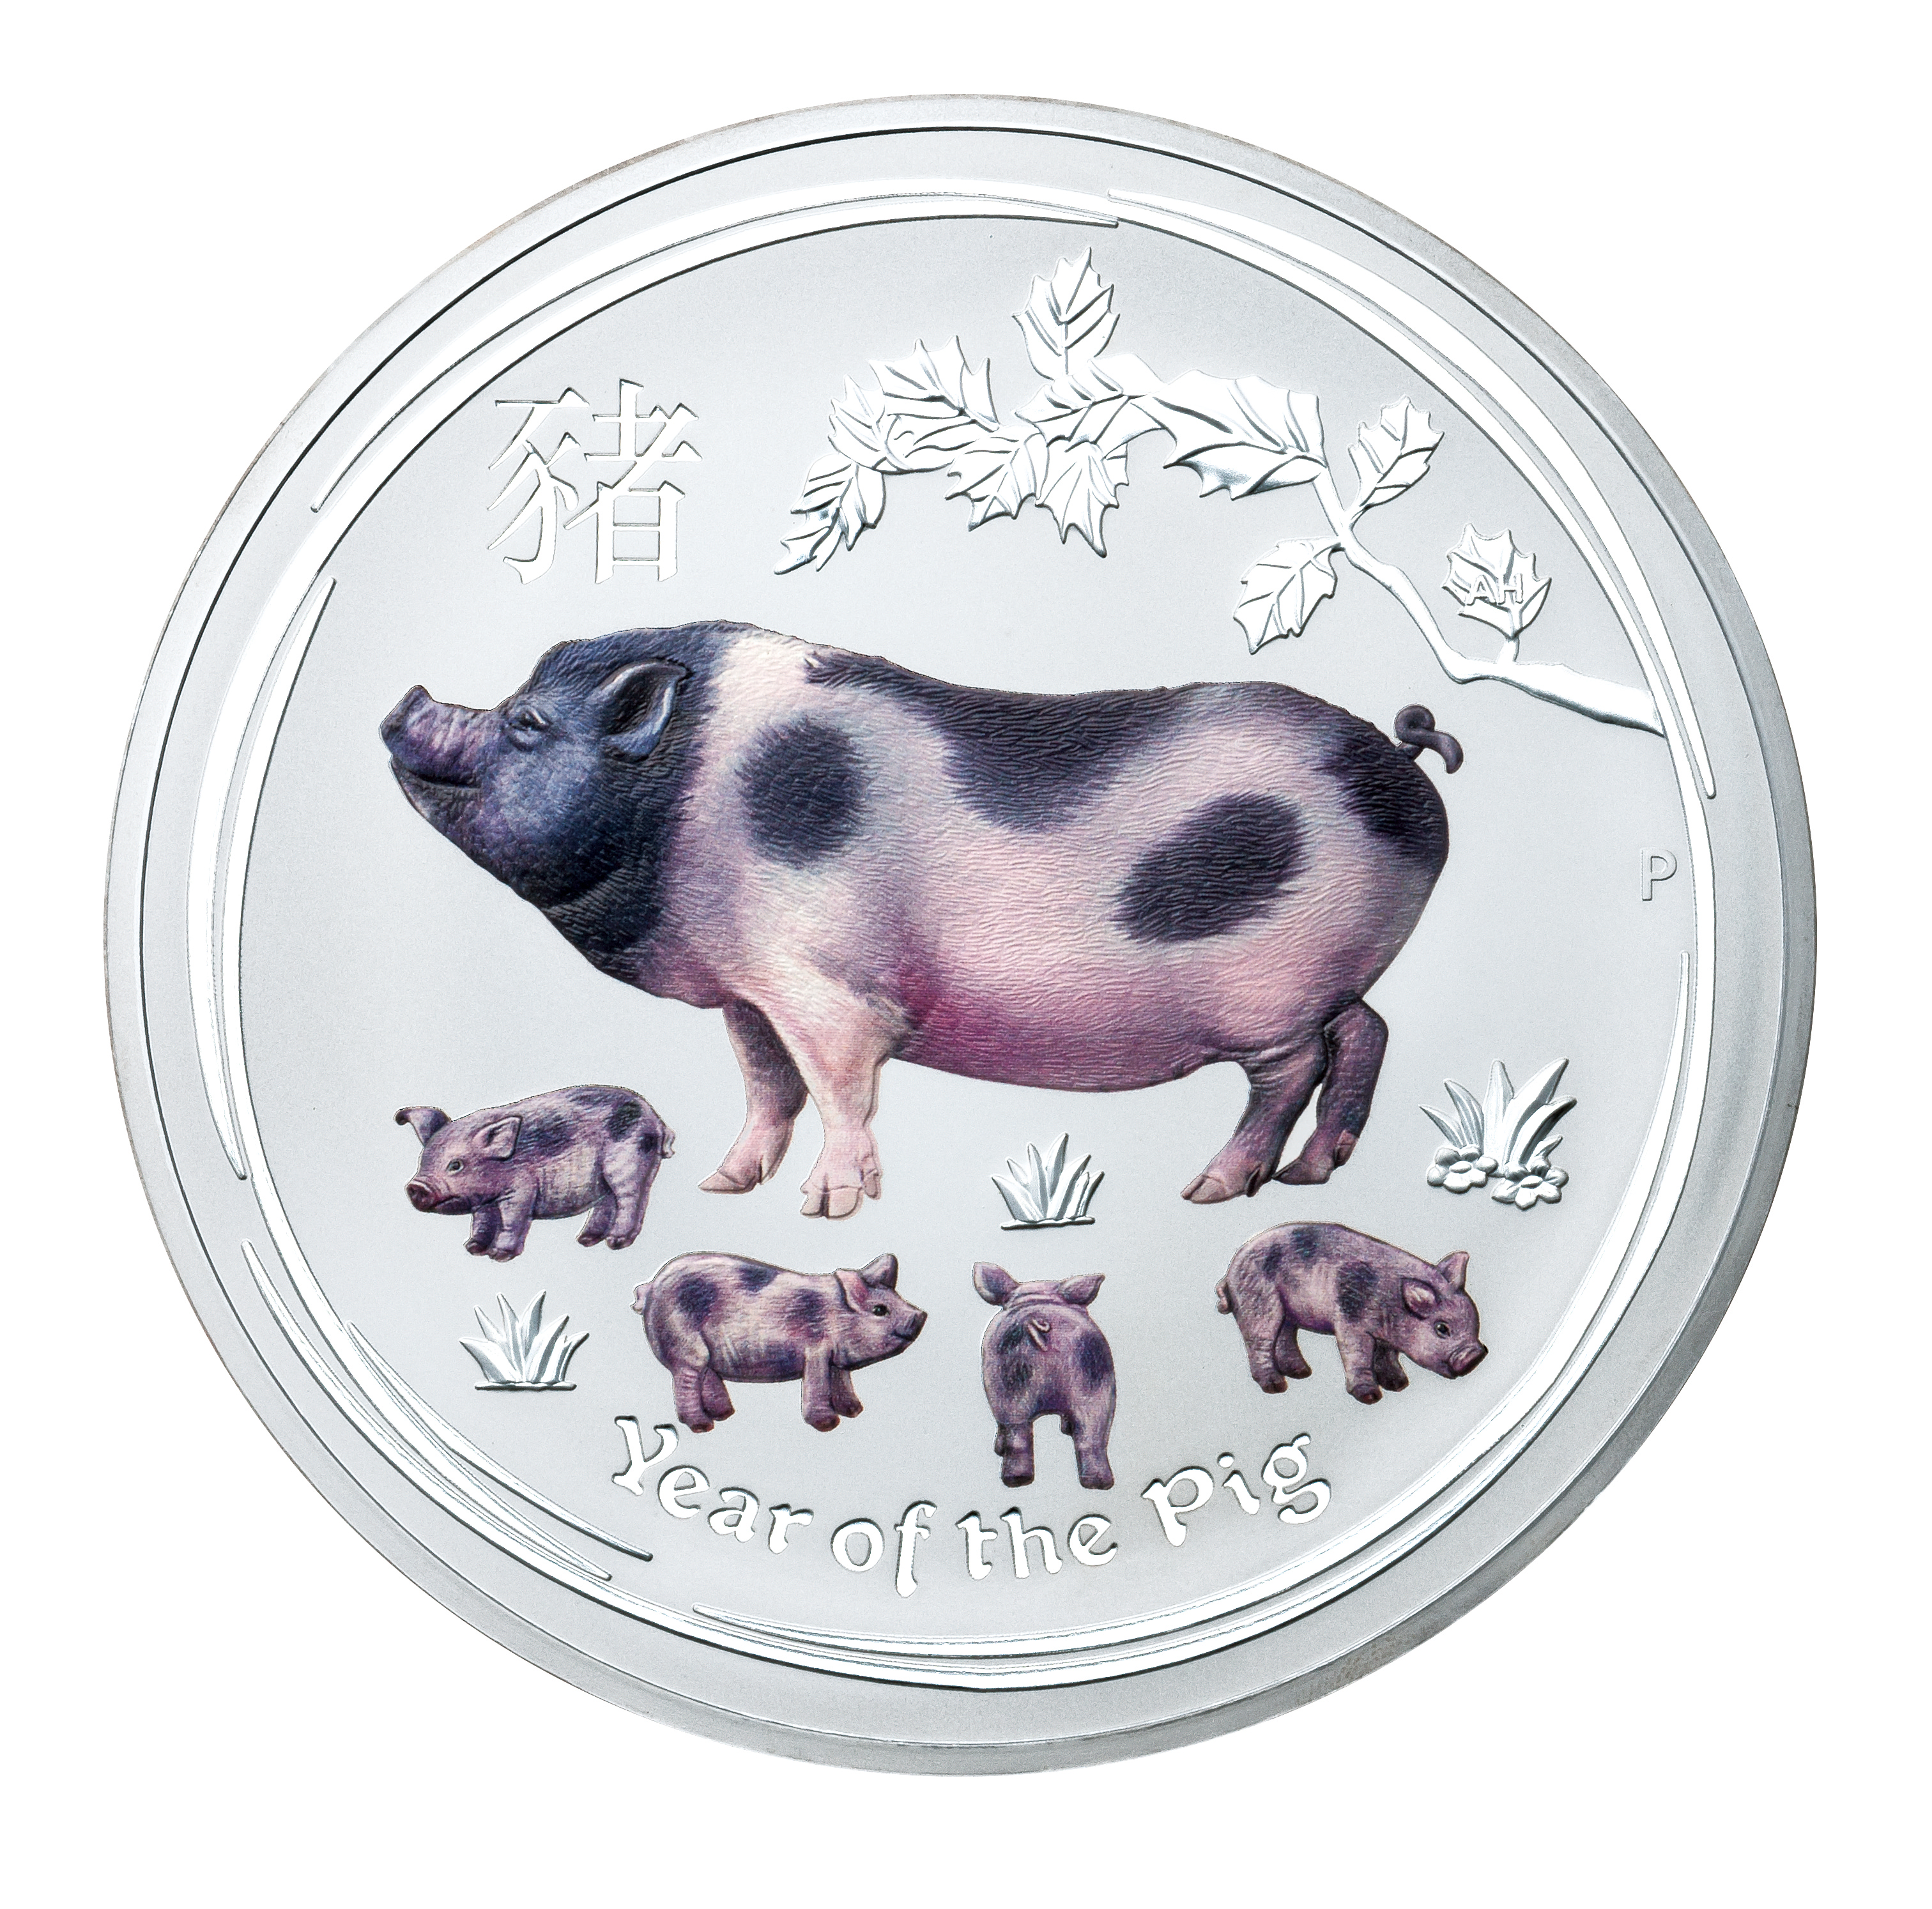 亥年猪図記念コイン の取次販売開始について ニュースリリース 埼玉りそな銀行